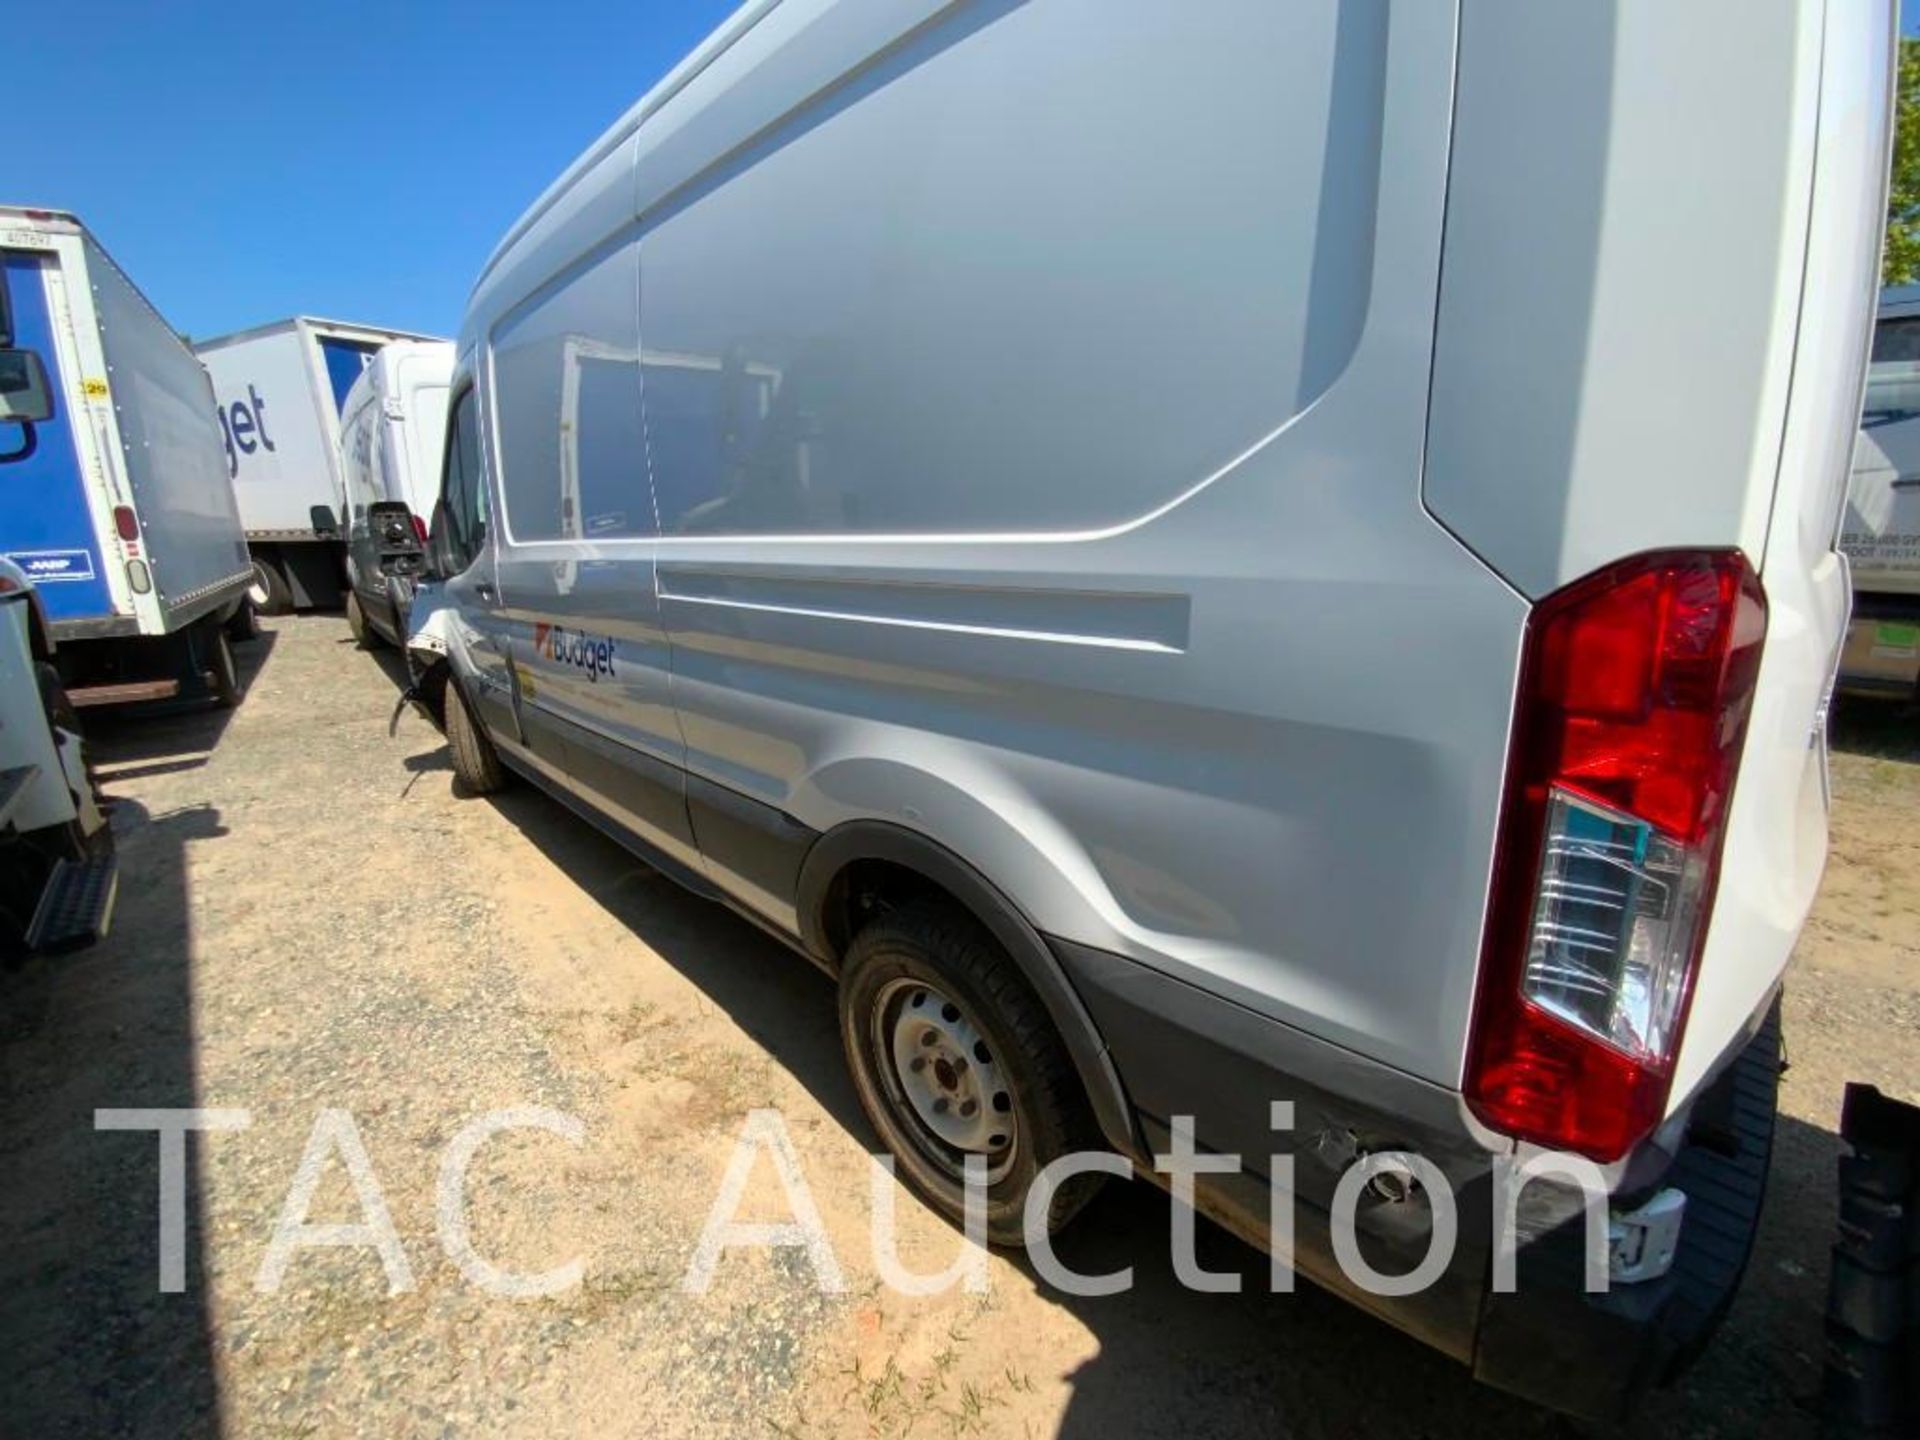 2019 Ford Transit 150 Cargo Van - Image 10 of 80